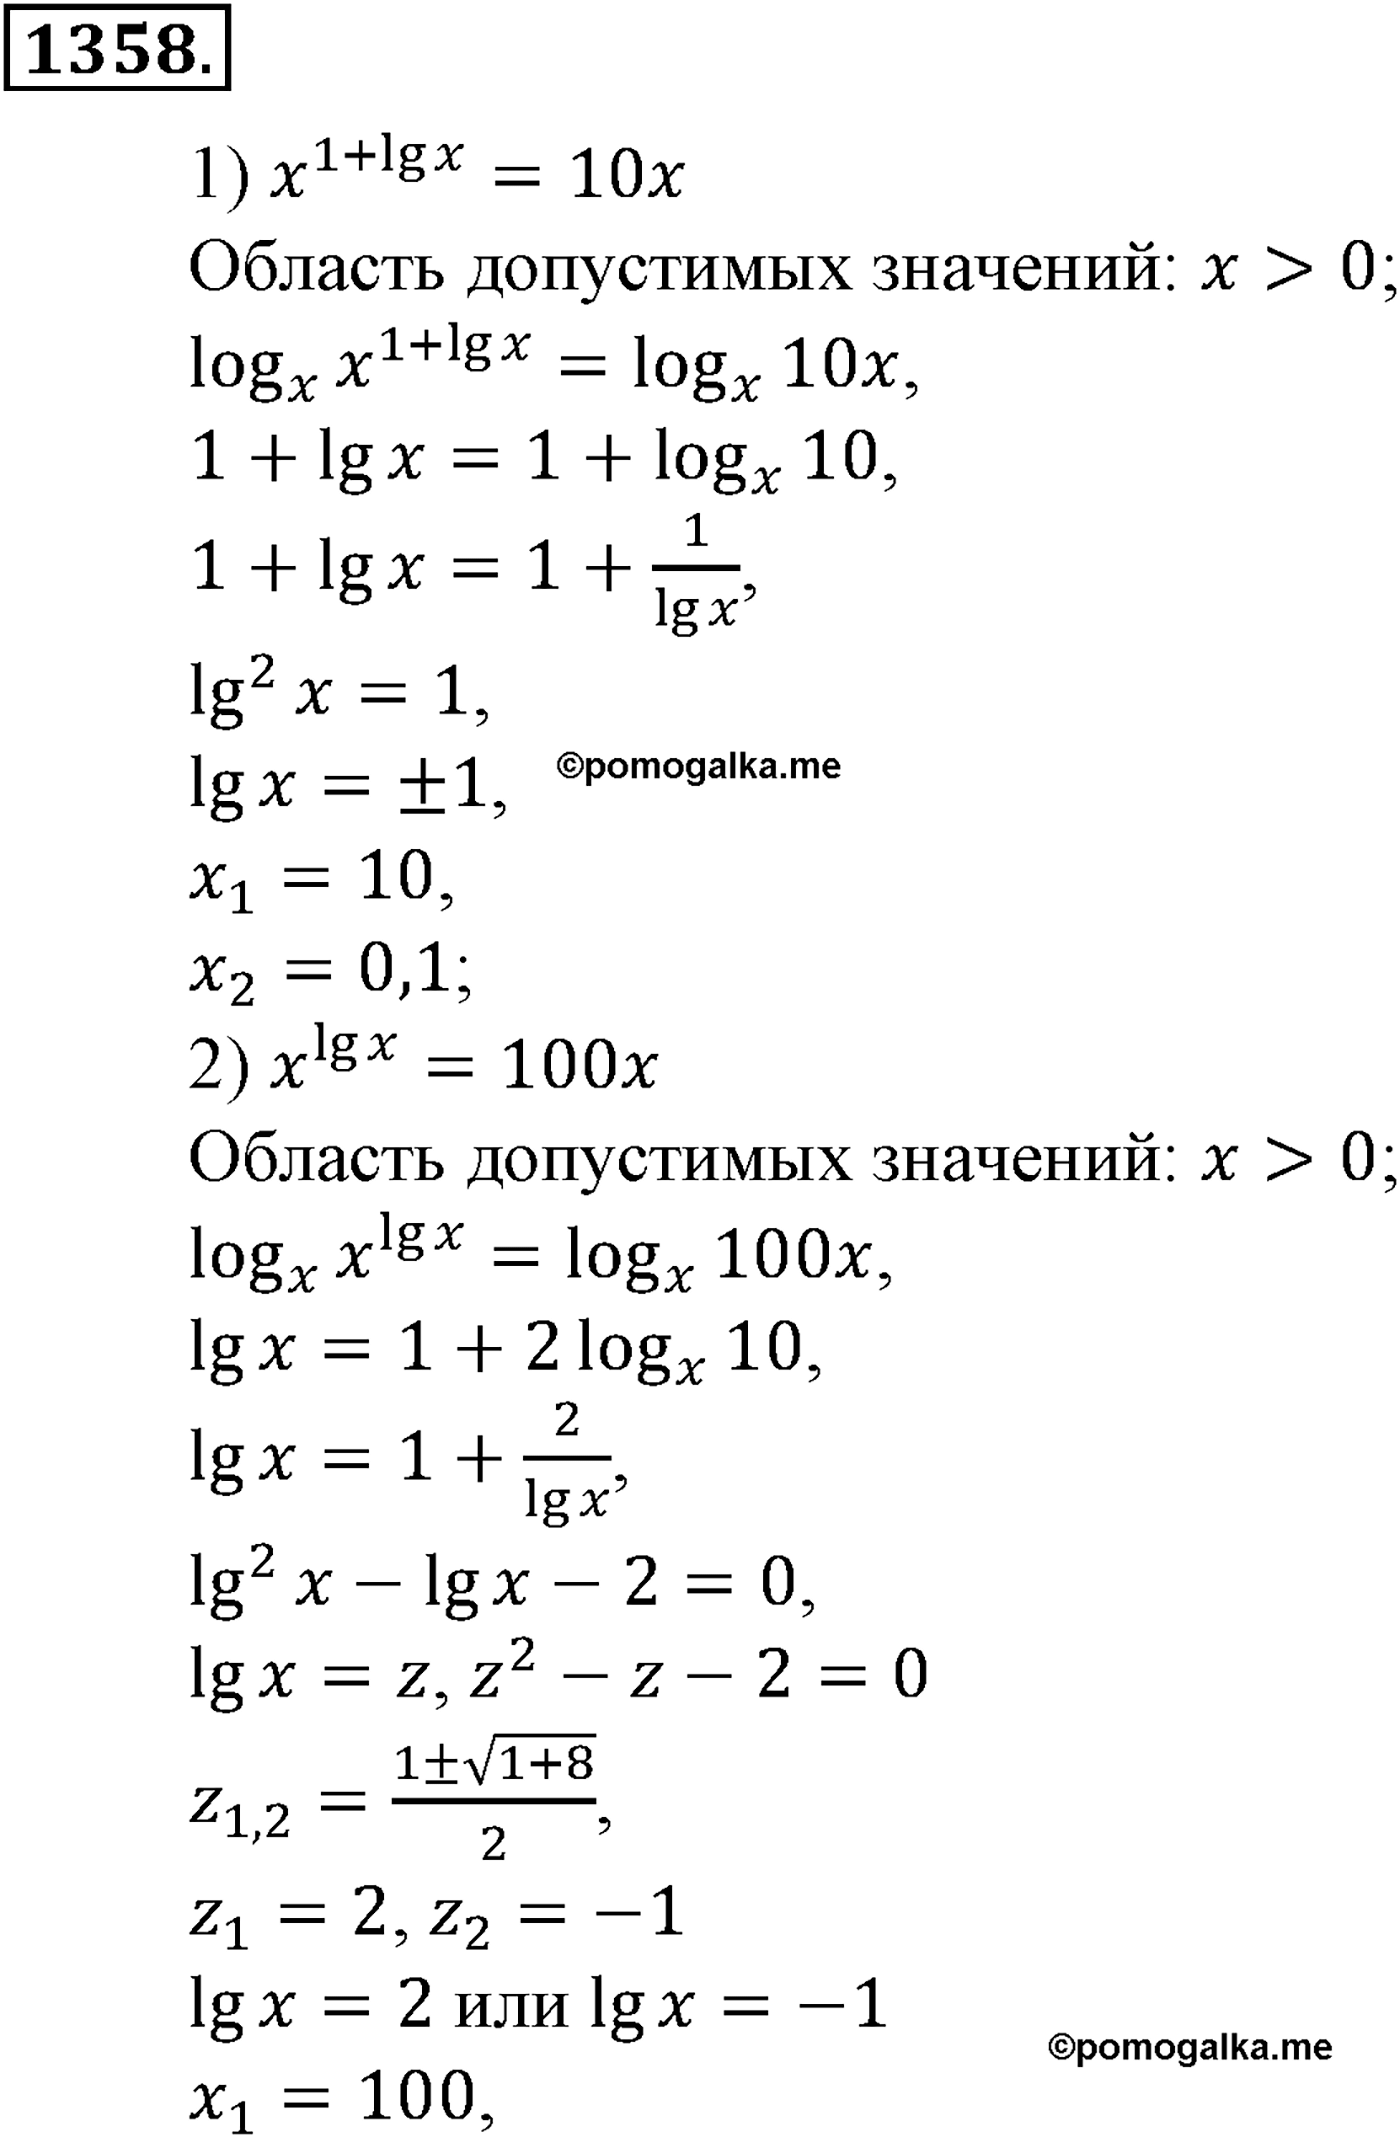 разбор задачи №1358 по алгебре за 10-11 класс из учебника Алимова, Колягина